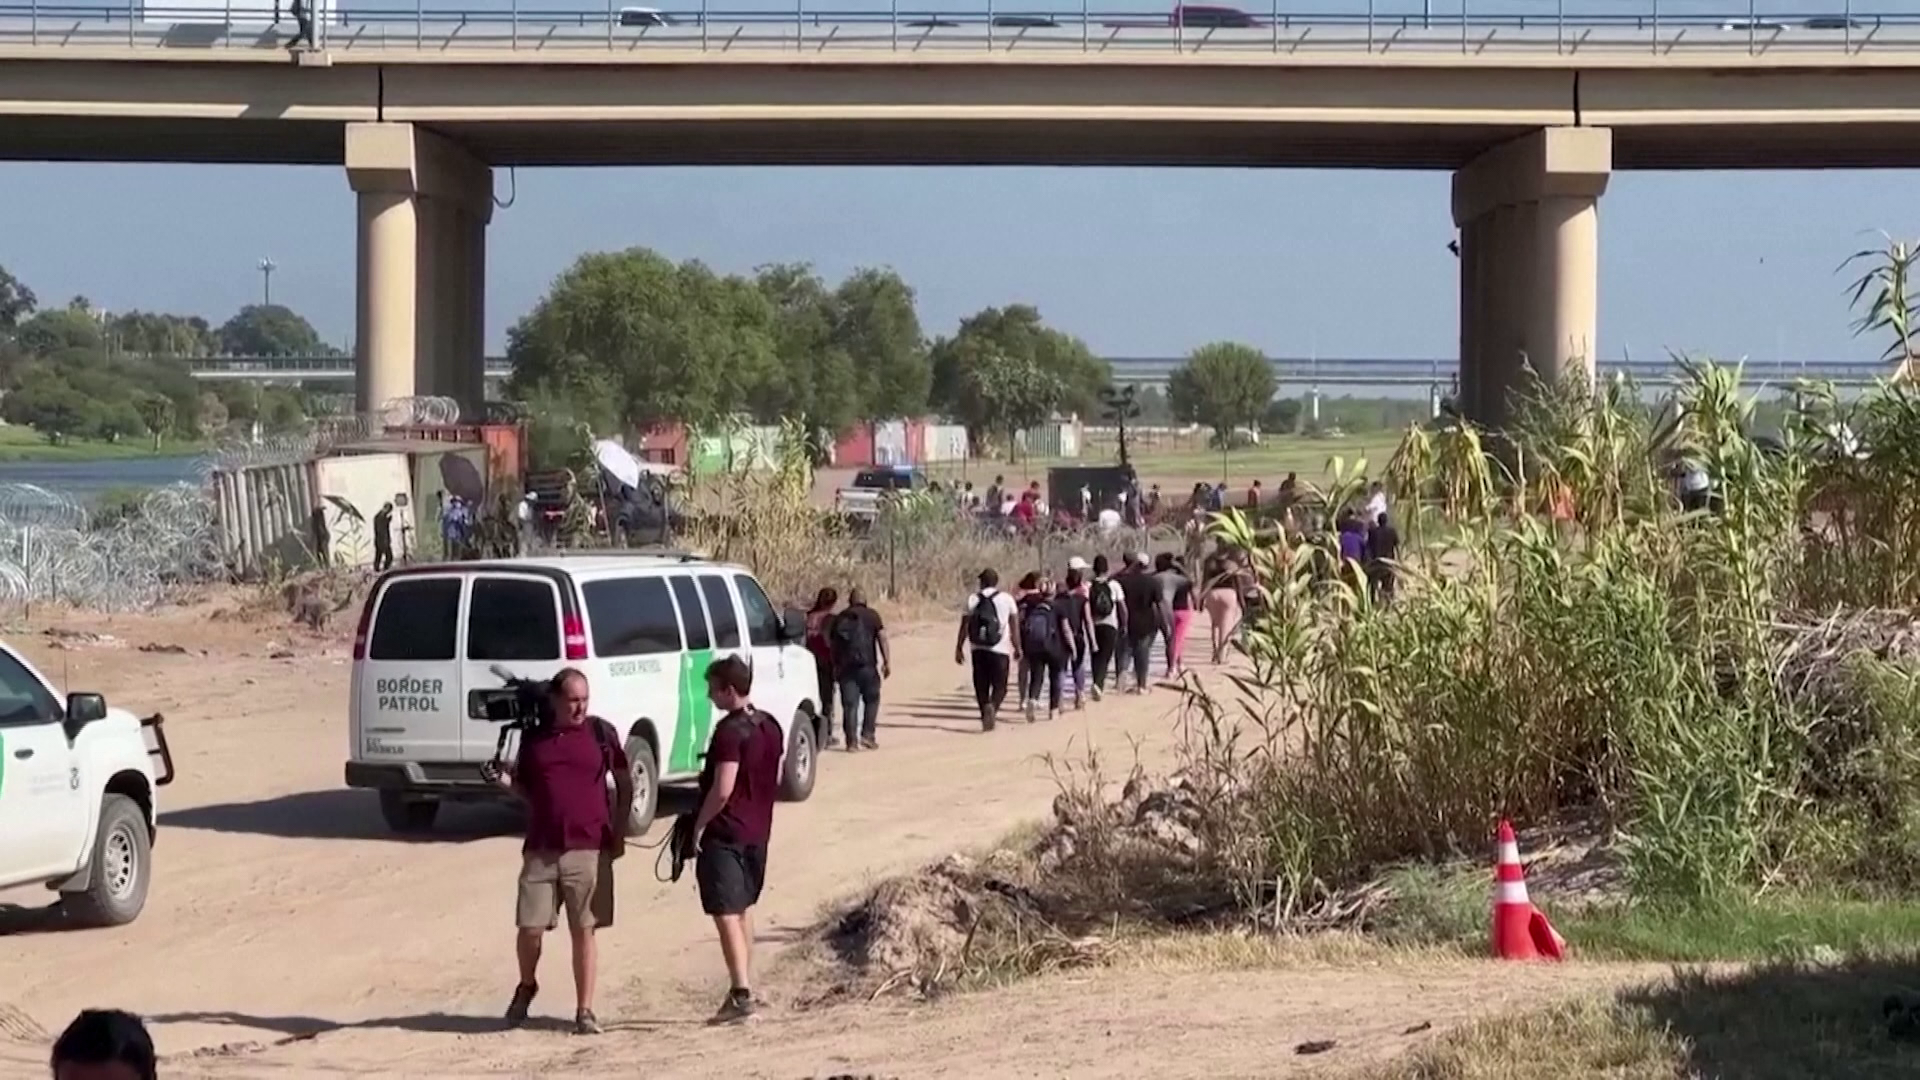 Naponta migránsok ezrei próbálnak bejutni az Egyesült Államokba